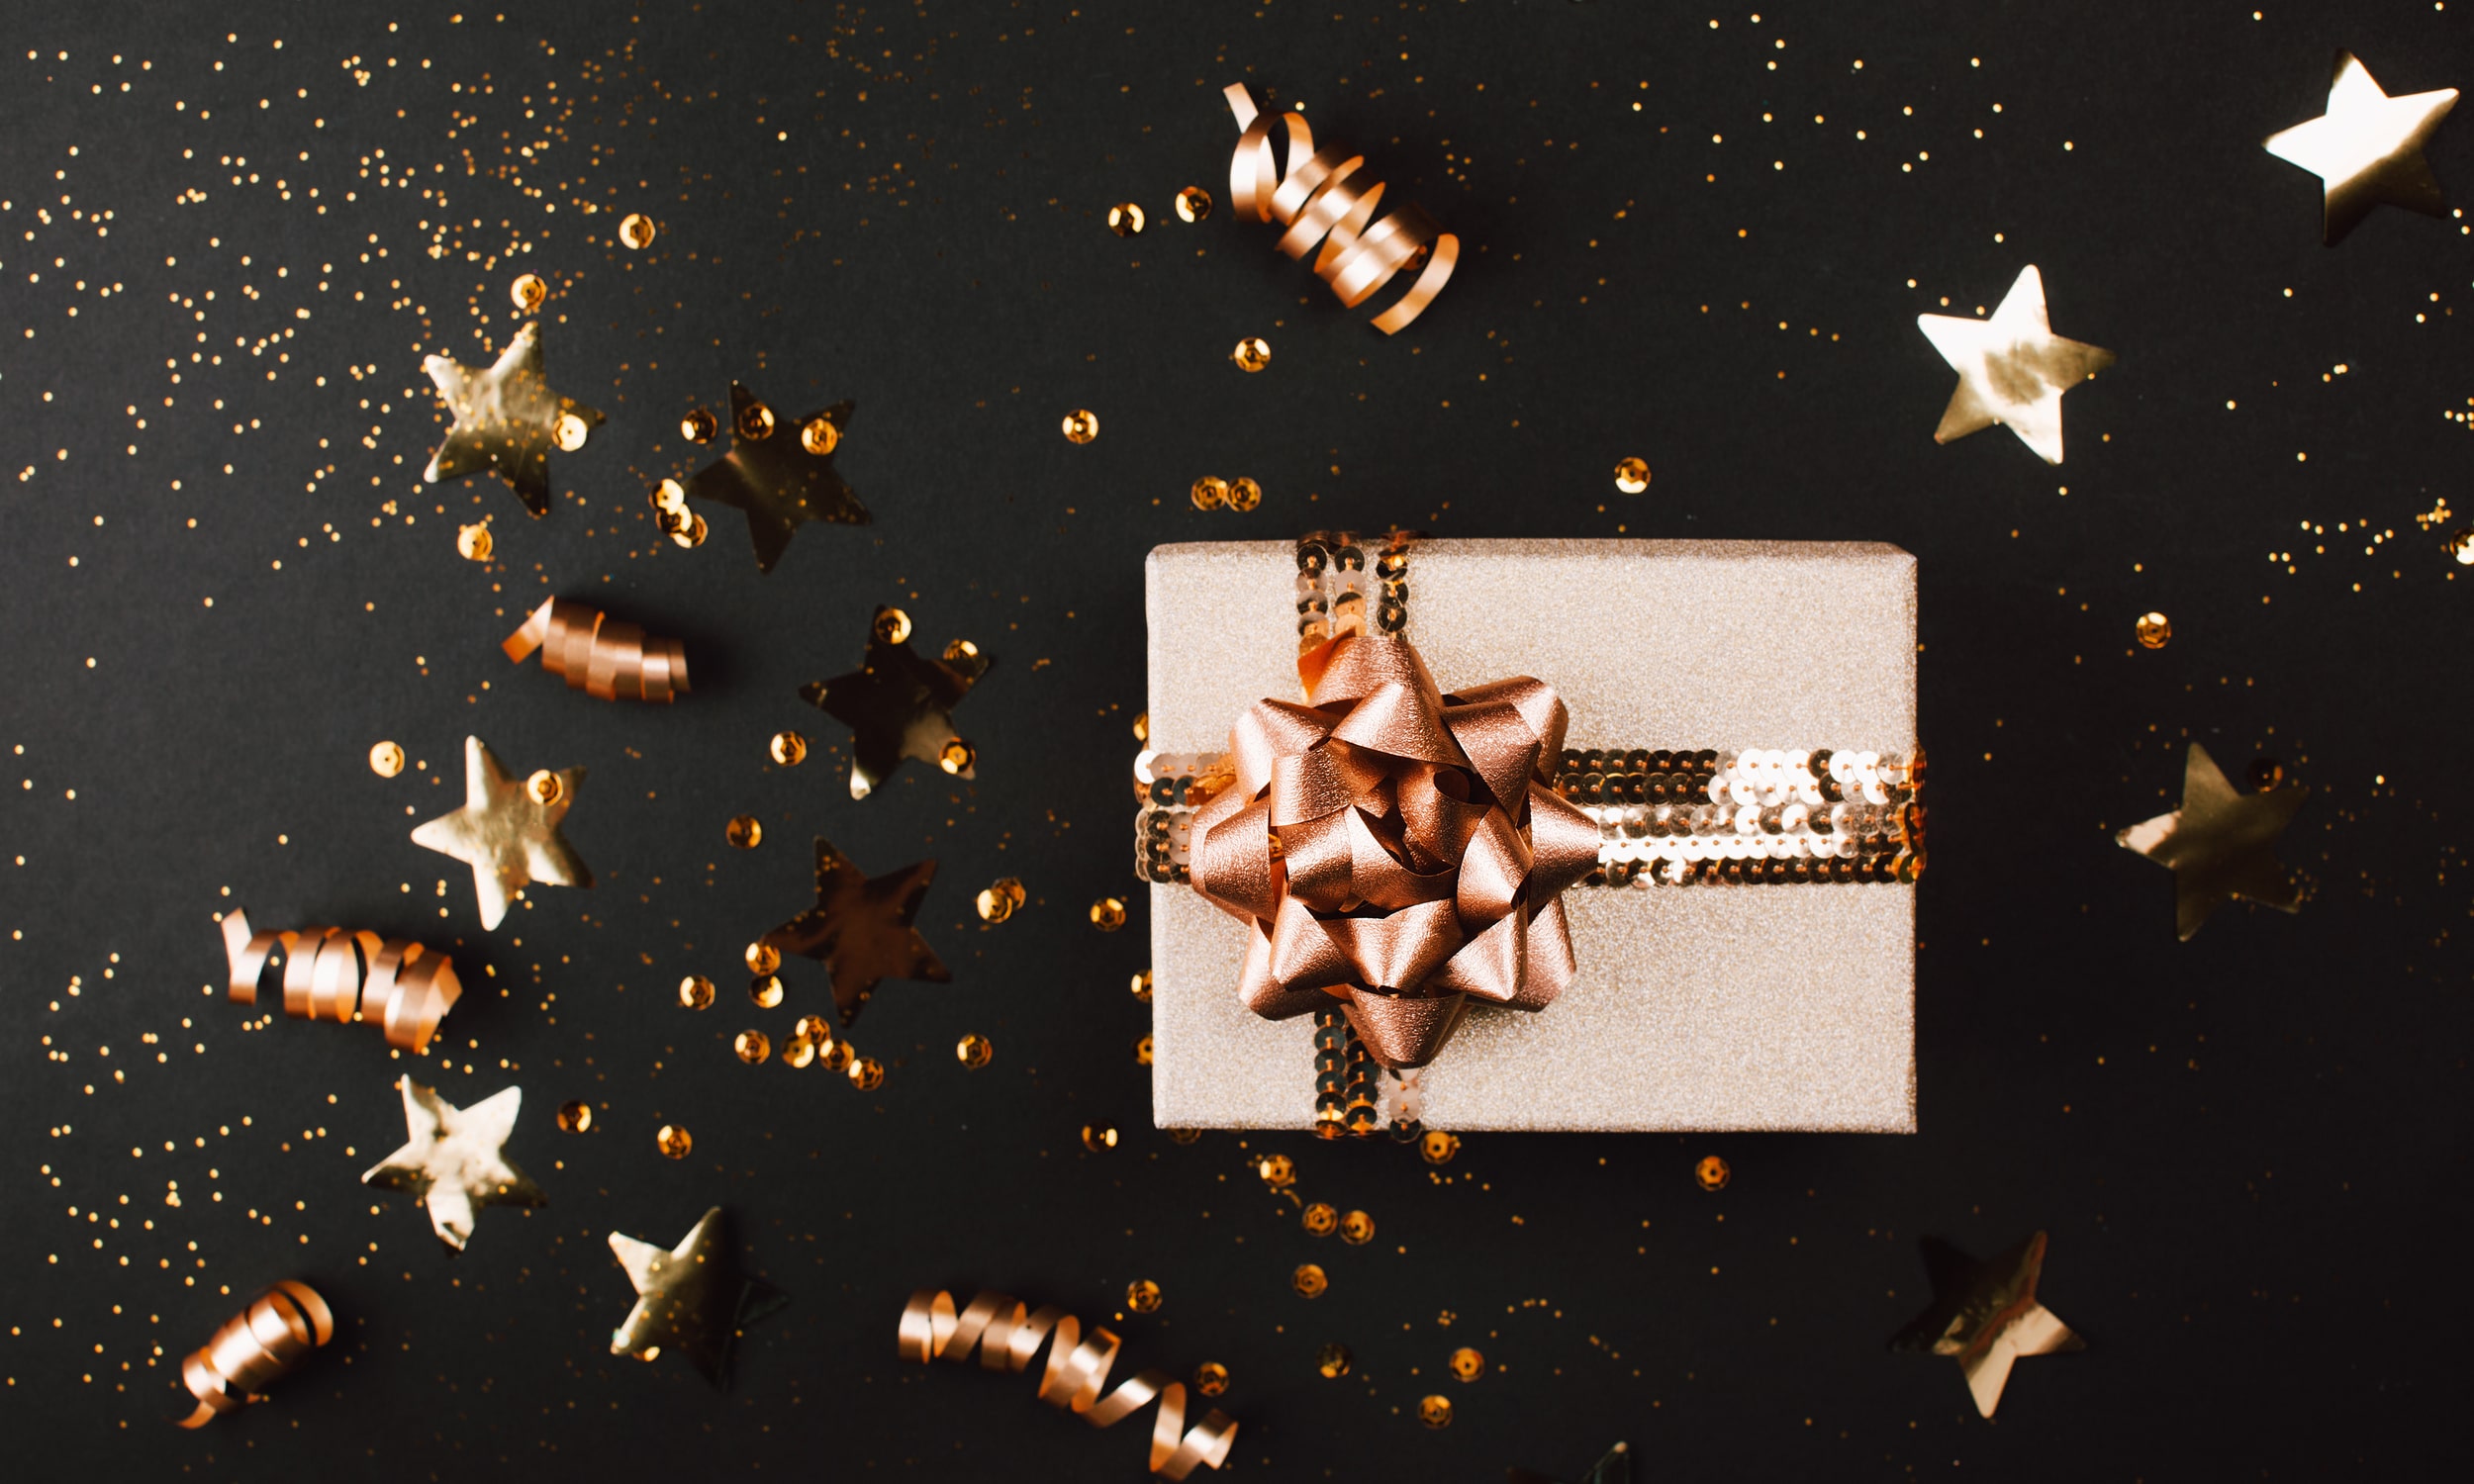 graziai supakuota auksine kaledine dovana ant tamsaus stalo su konfeti